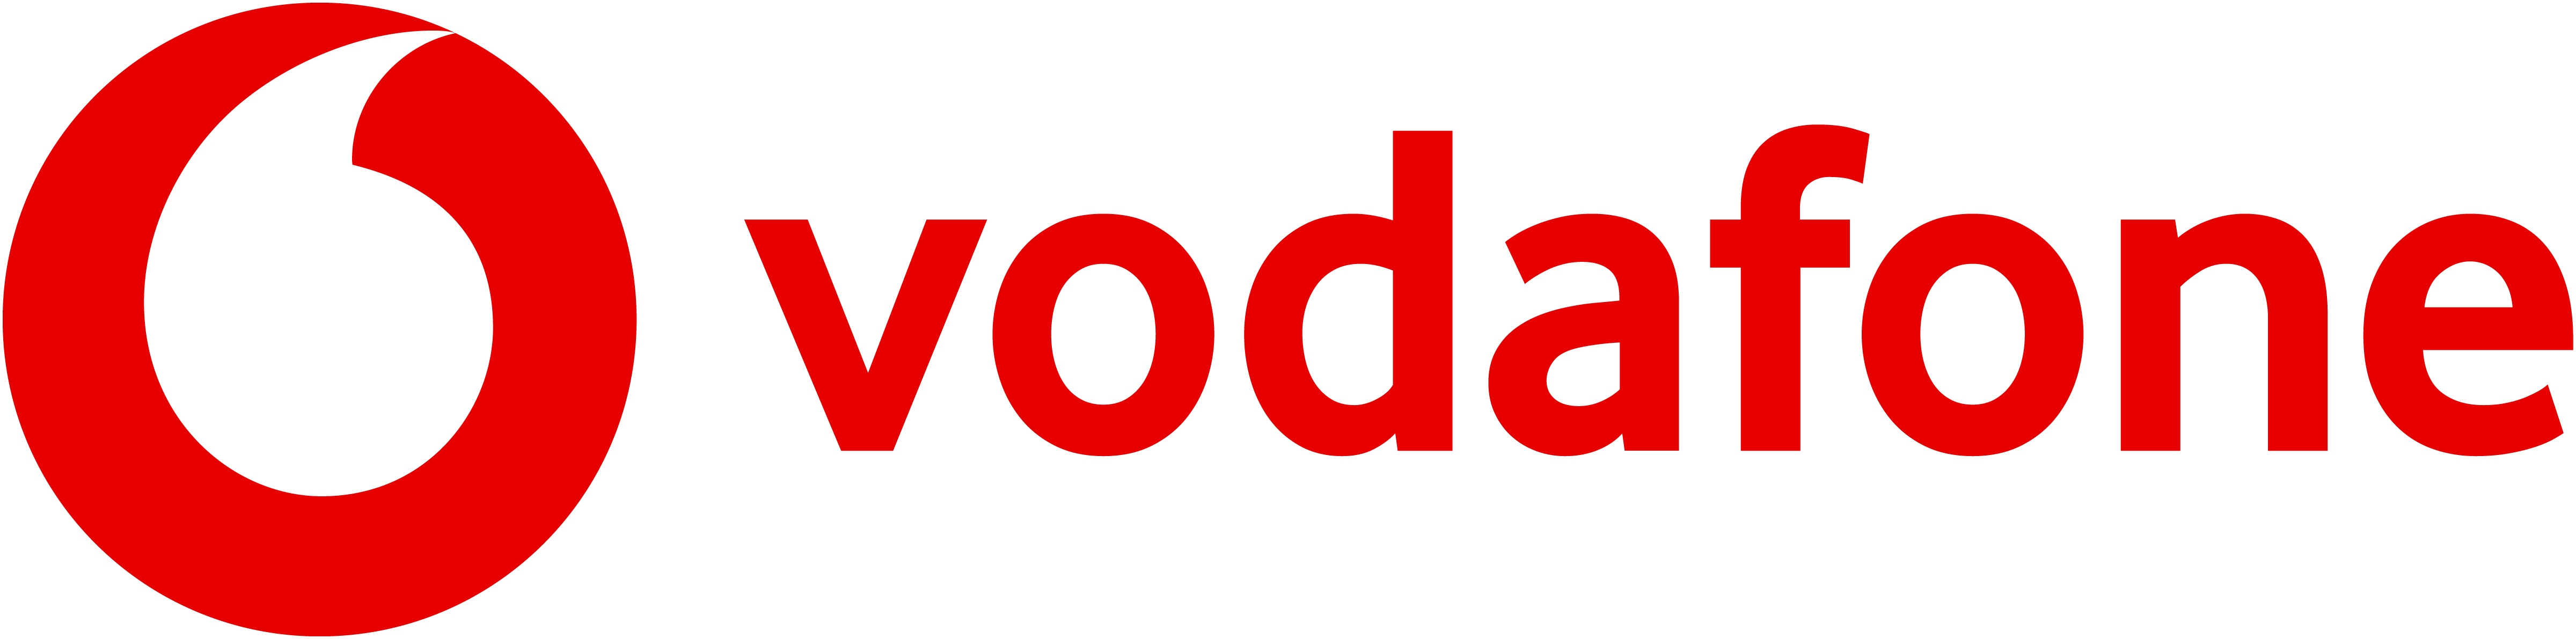 Vodafone Magyarország Távközlési Zártkörűen Működő Részvénytársaság